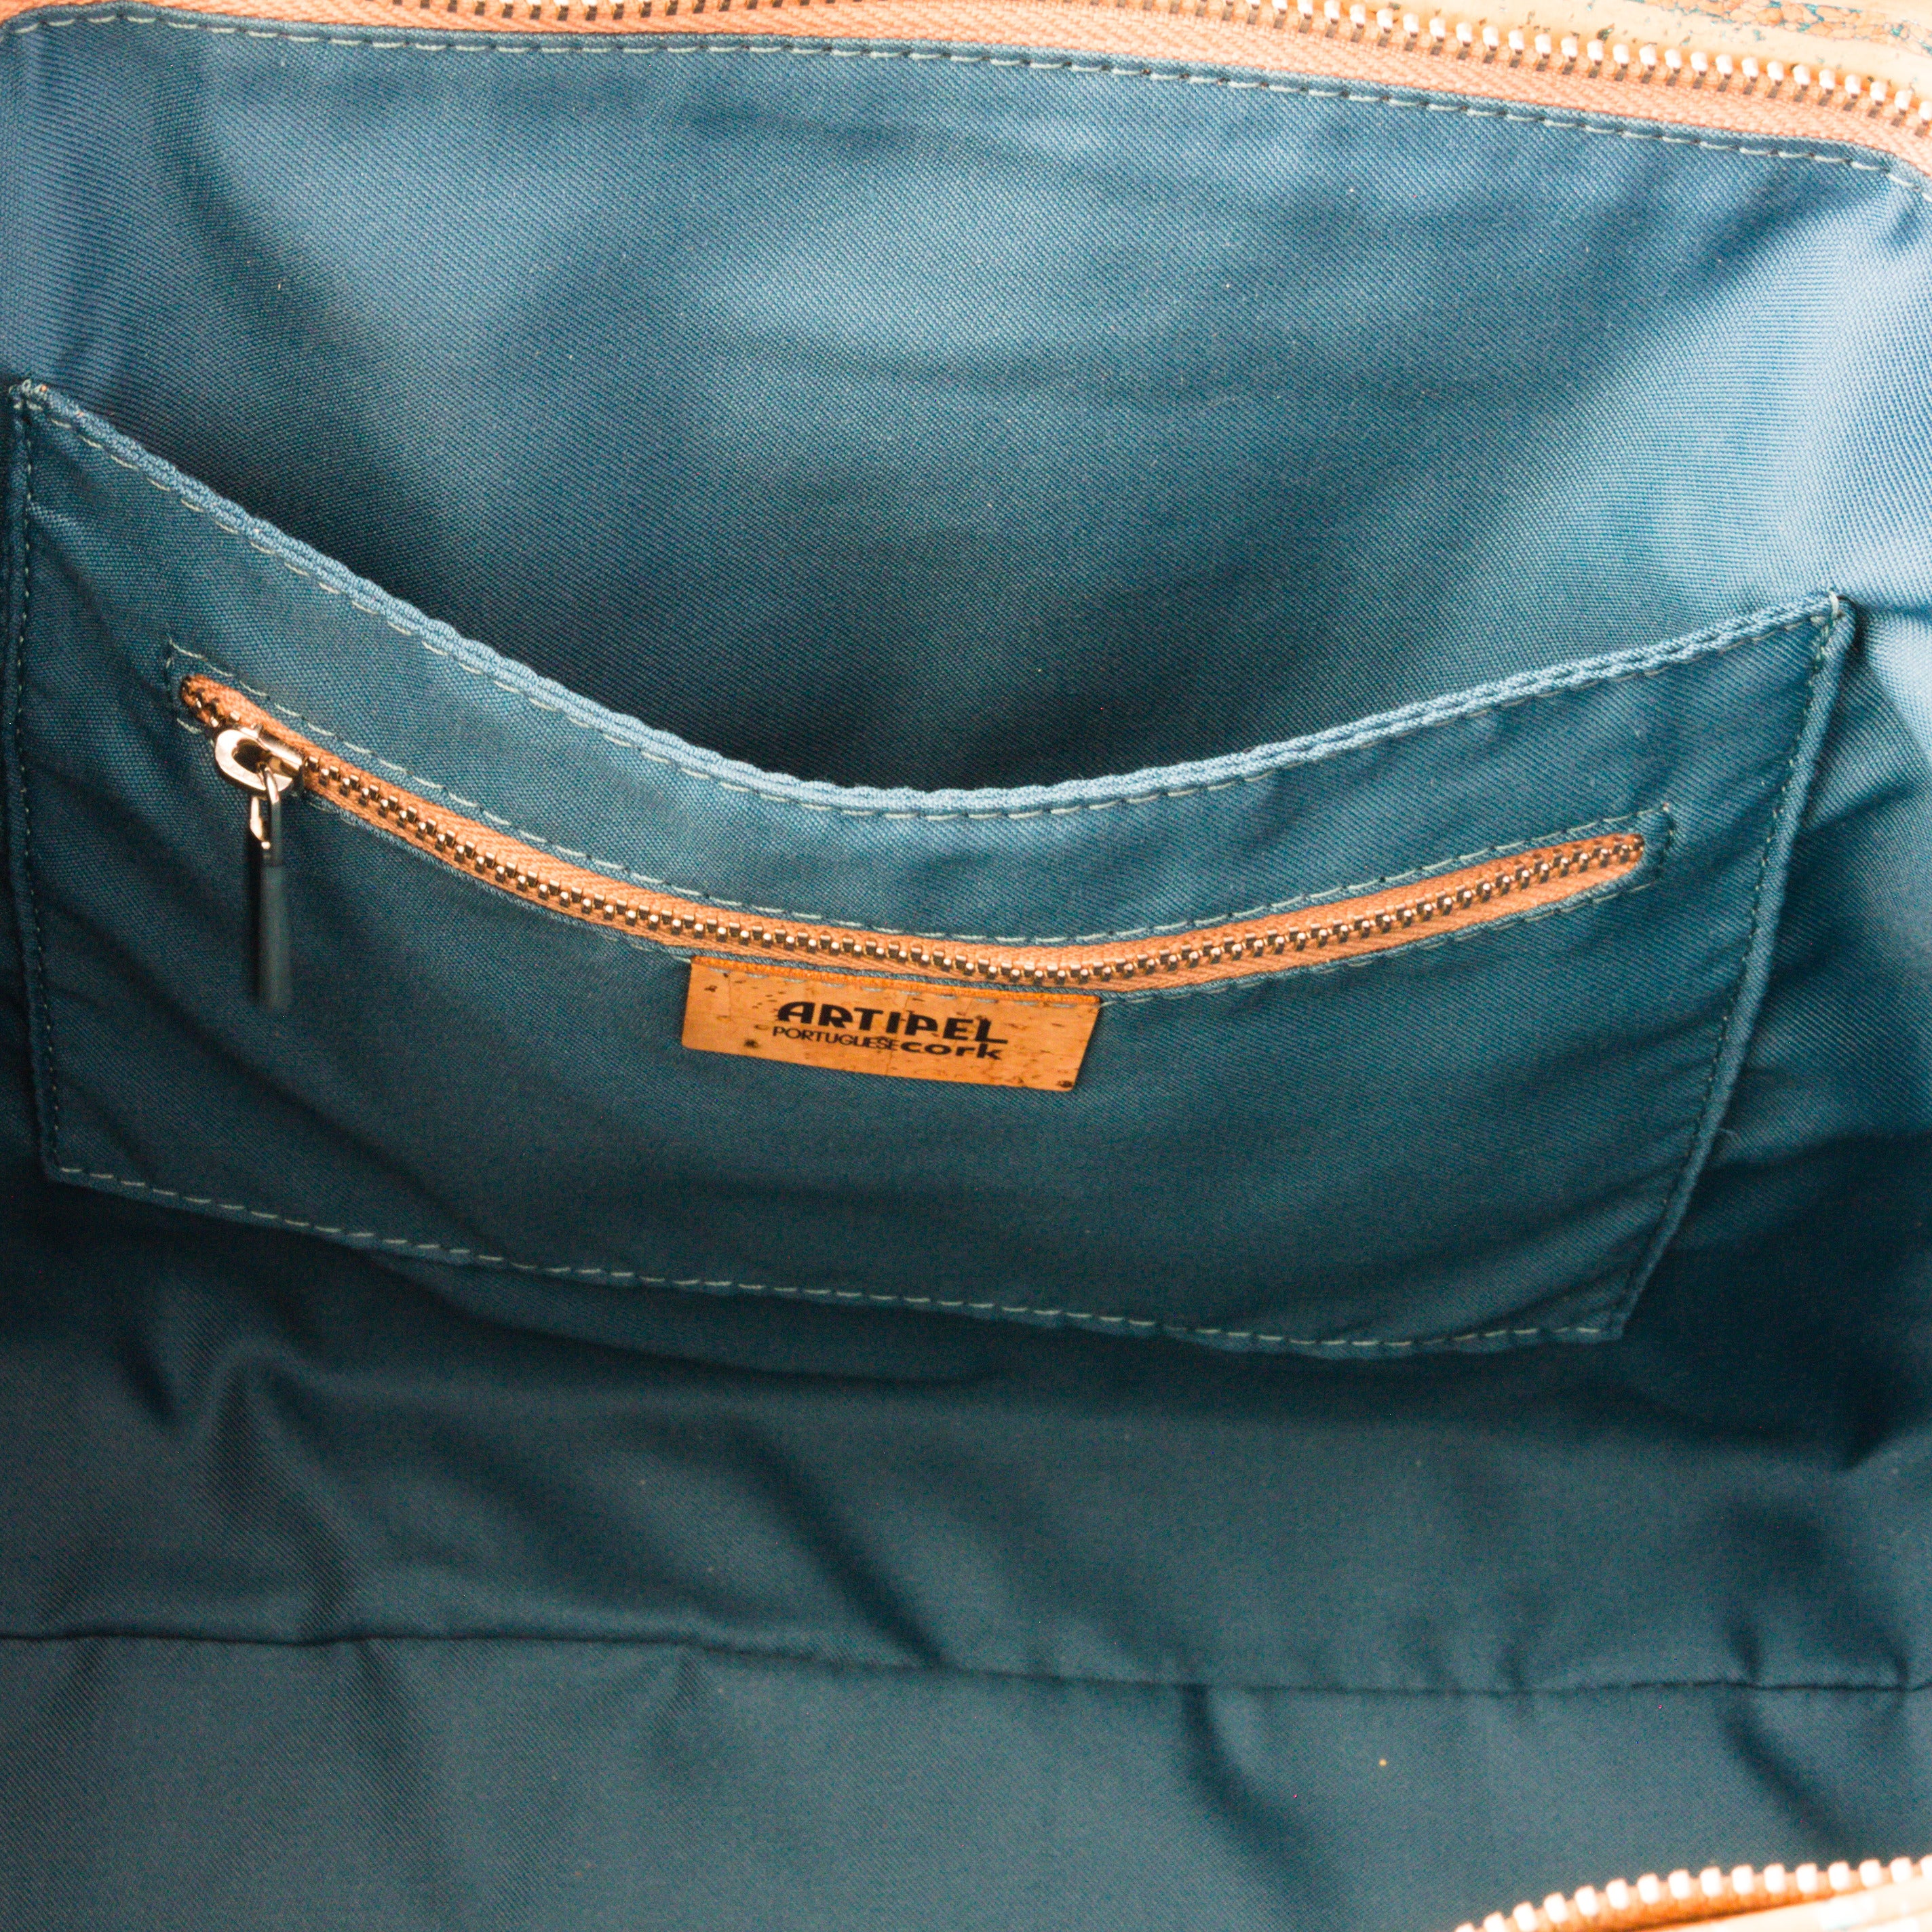 Kork Handtasche * in 2 Größen und 2 Farben * Vegan * Umhängetasche für Frauen * Crossbody * Shopper * handmade in Portugal